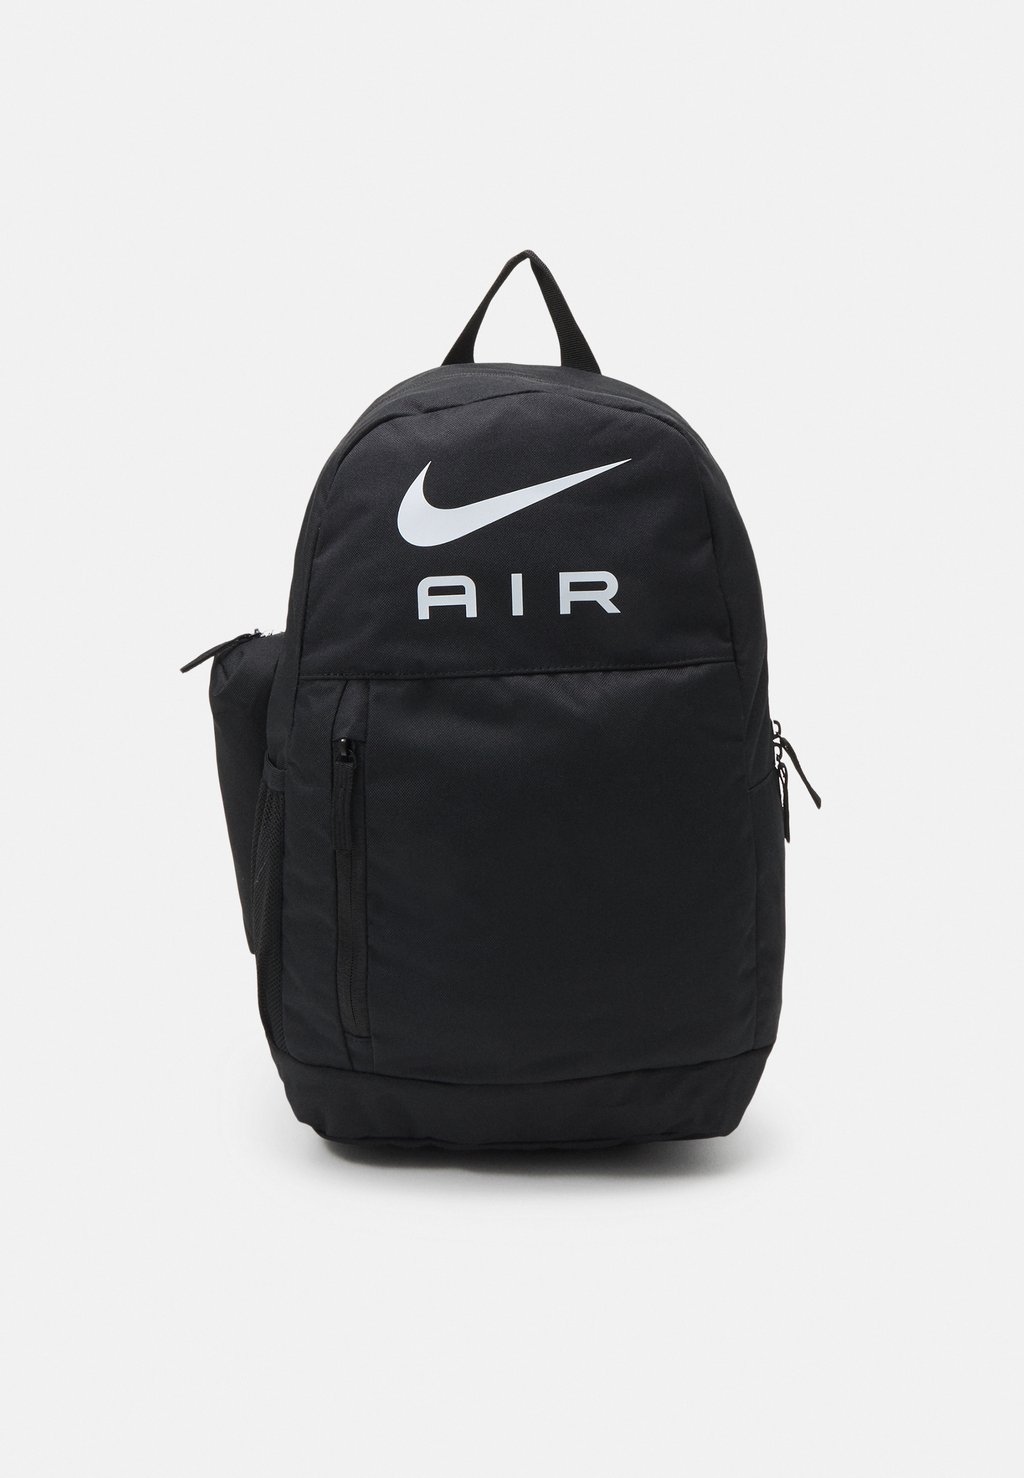 Комплект рюкзака Unisex Set Nike, черный